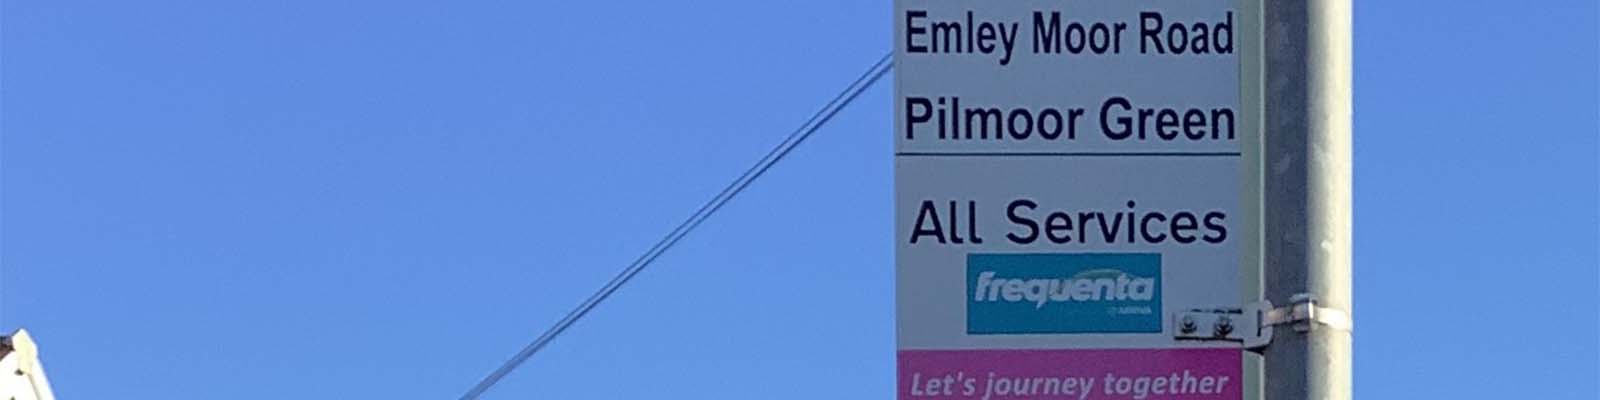 Pilmoor Green Bus stop